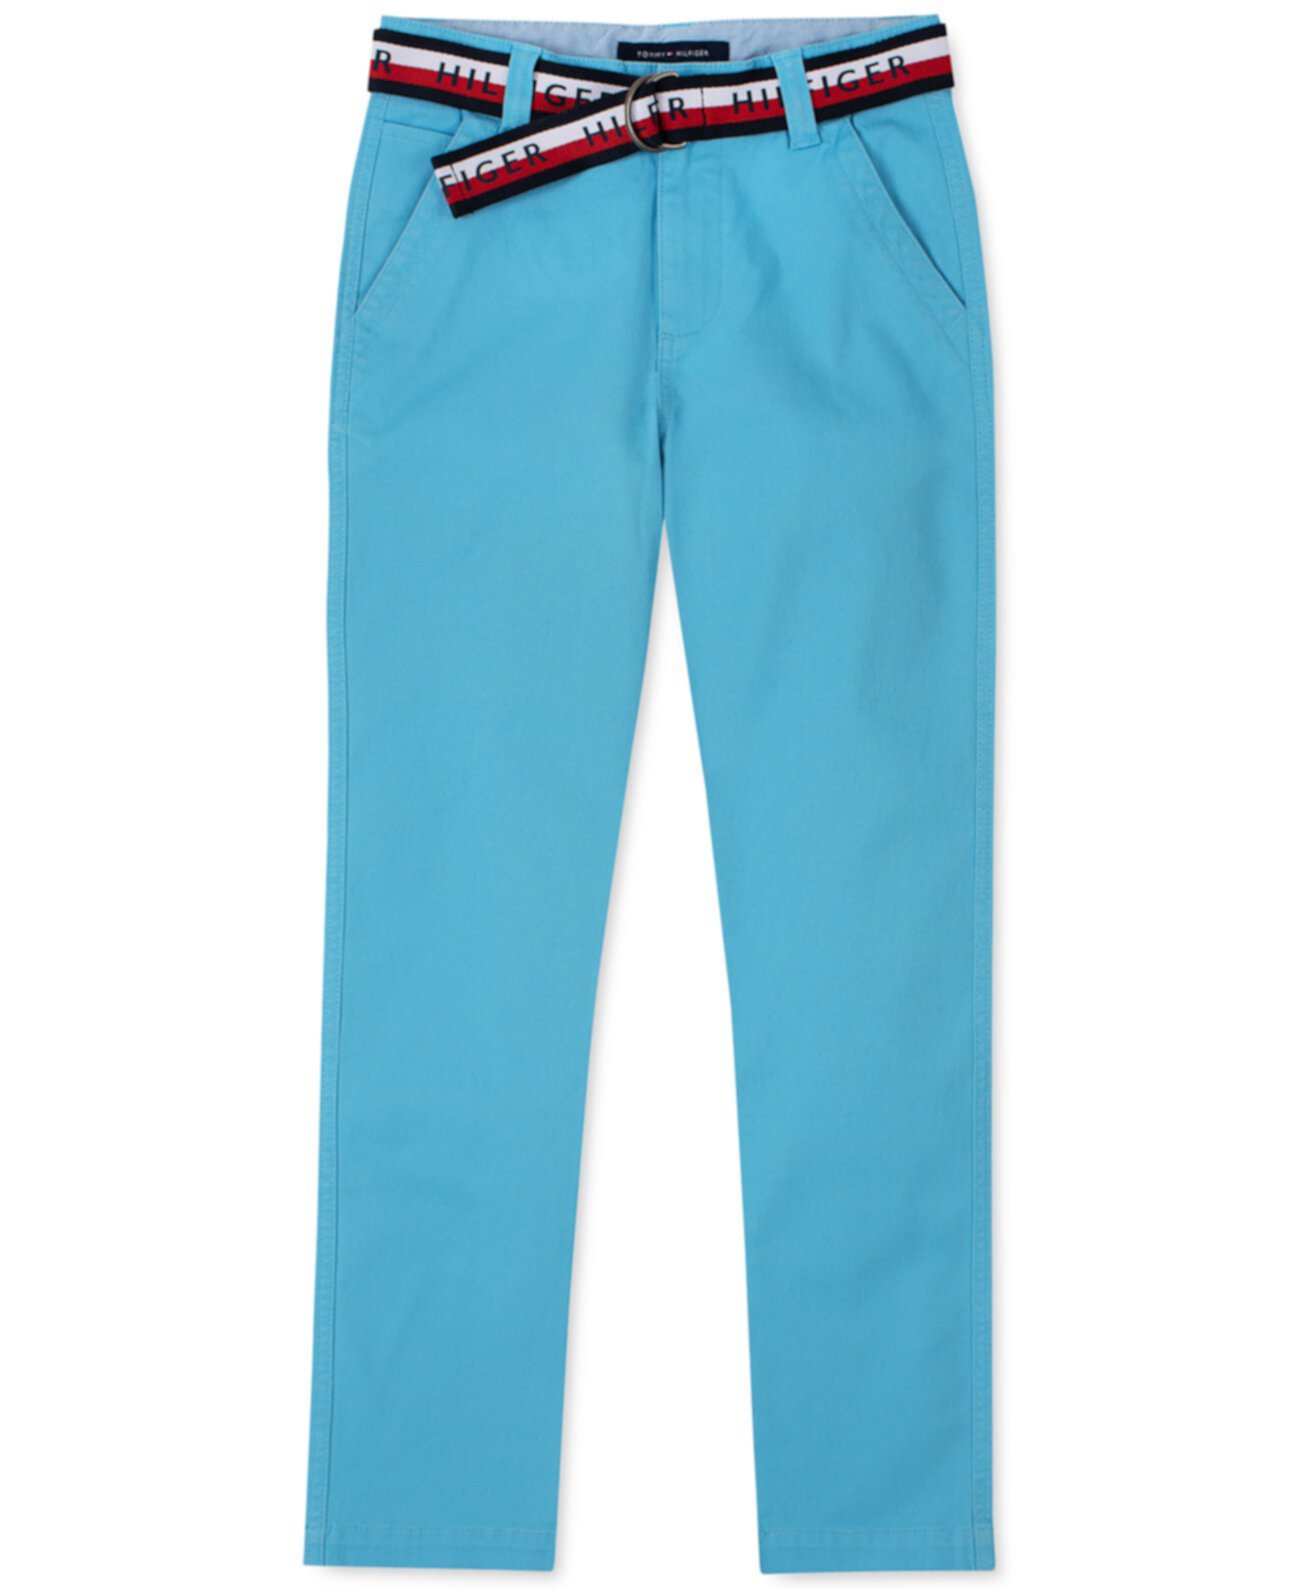 Синие брюки "Big Boys David" с поясом с логотипом D-Ring Tommy Hilfiger